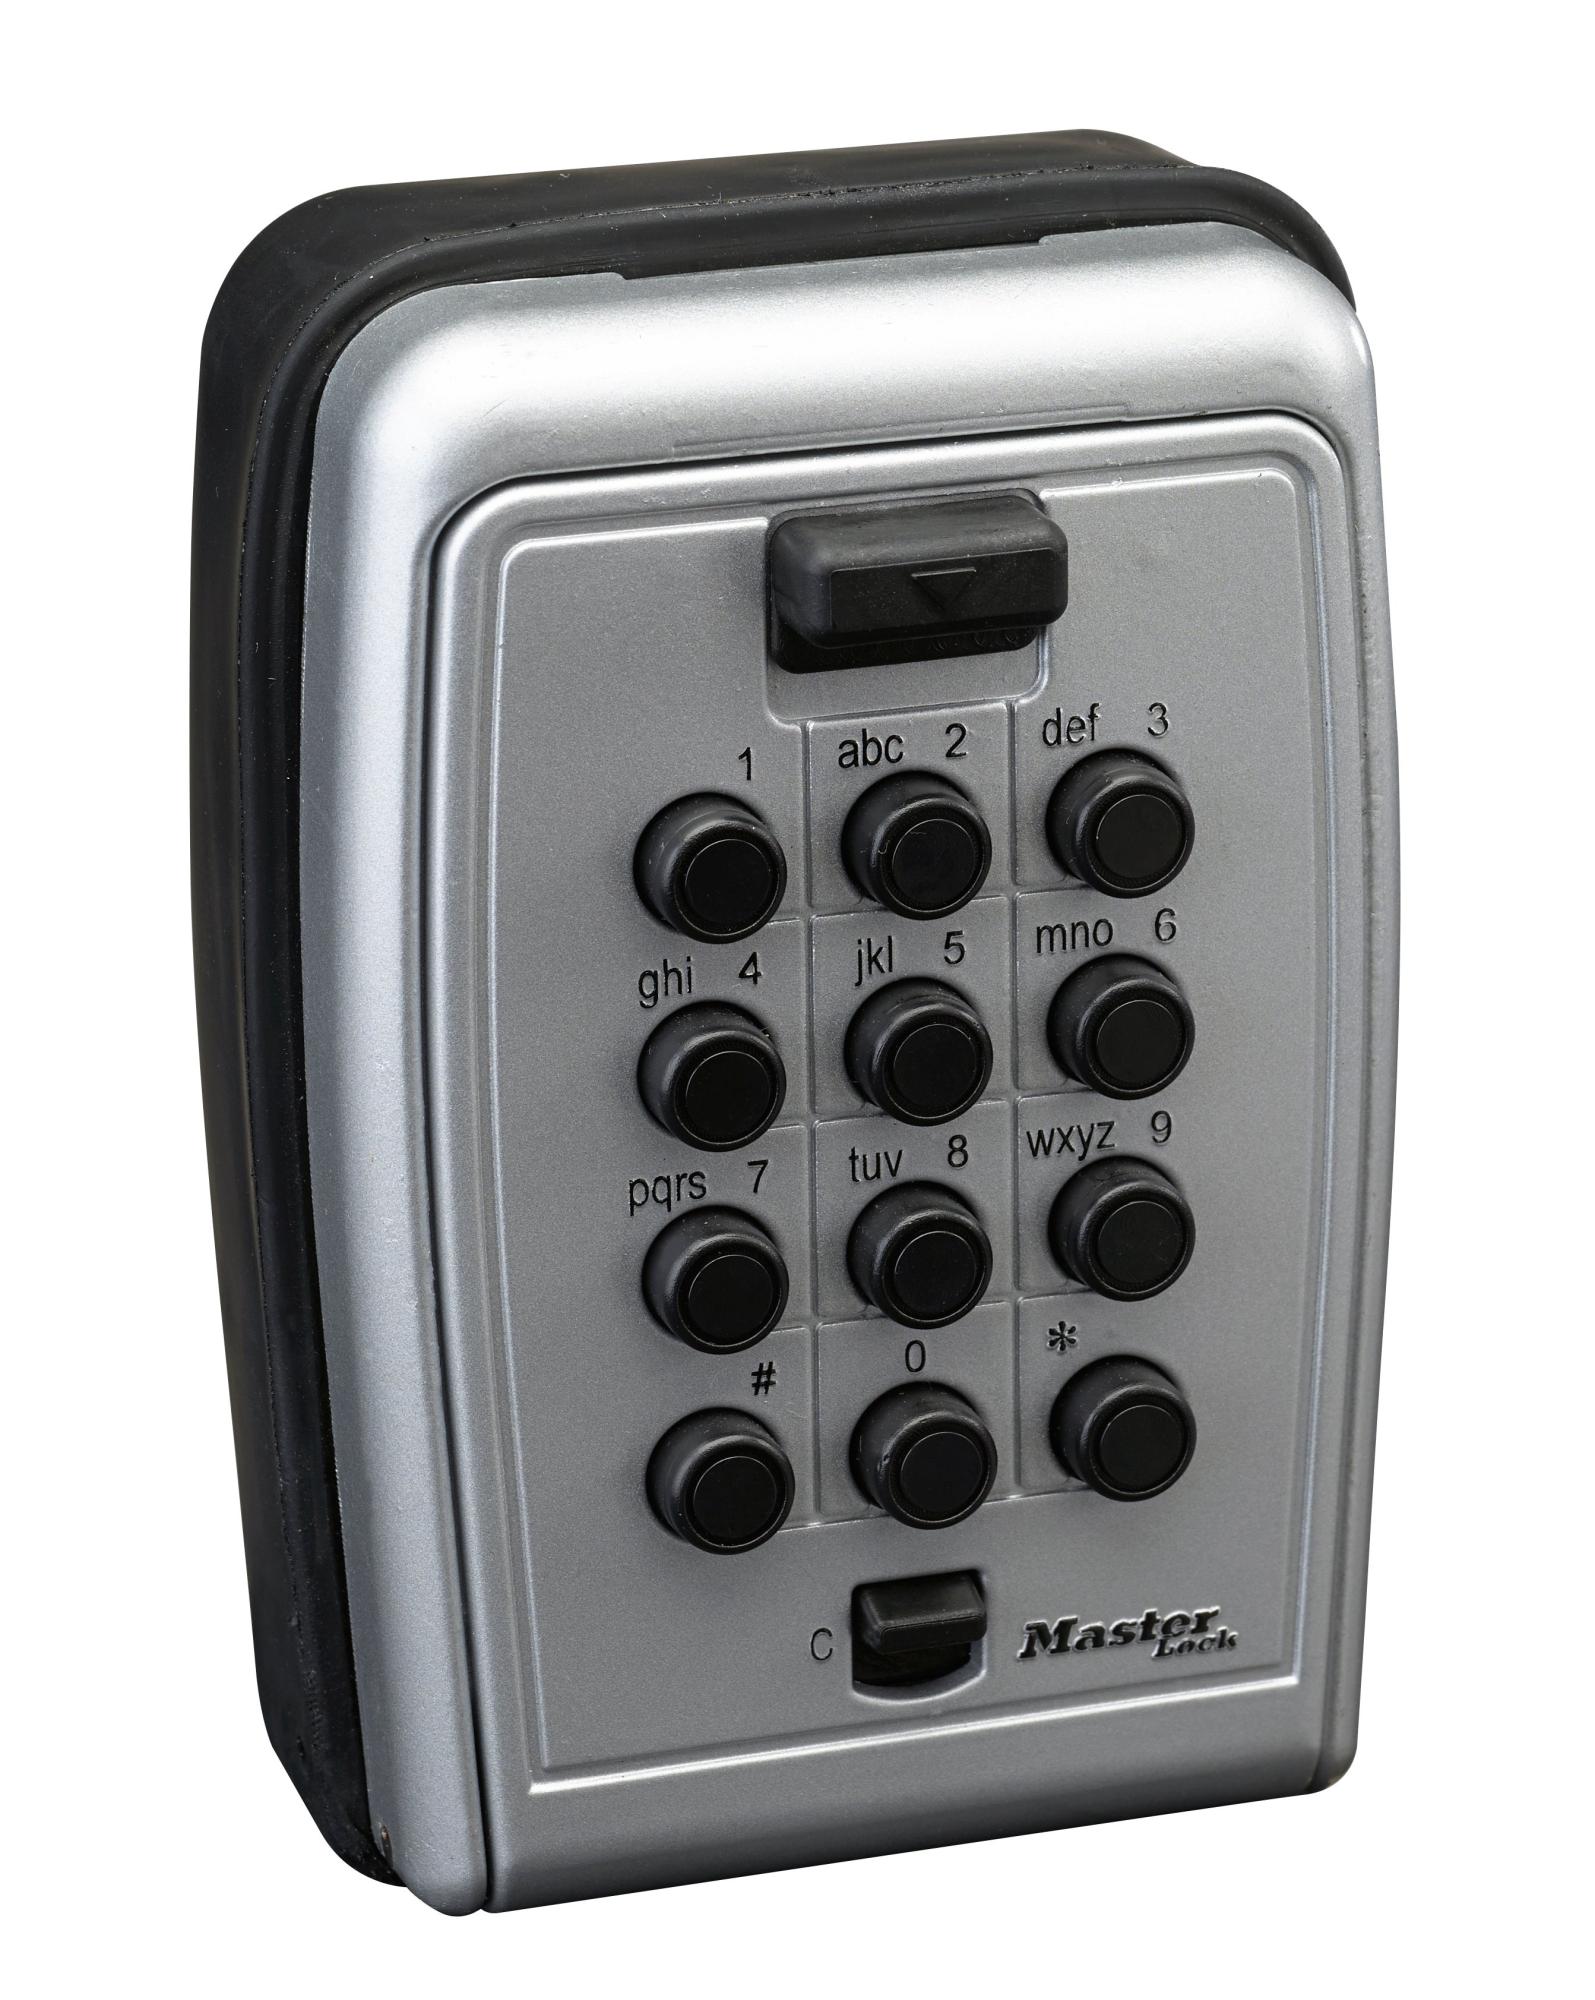 Minicoffre master lock select ACCESS à fixer, H. 12 x L. 8.3 x P. 3.4 cm